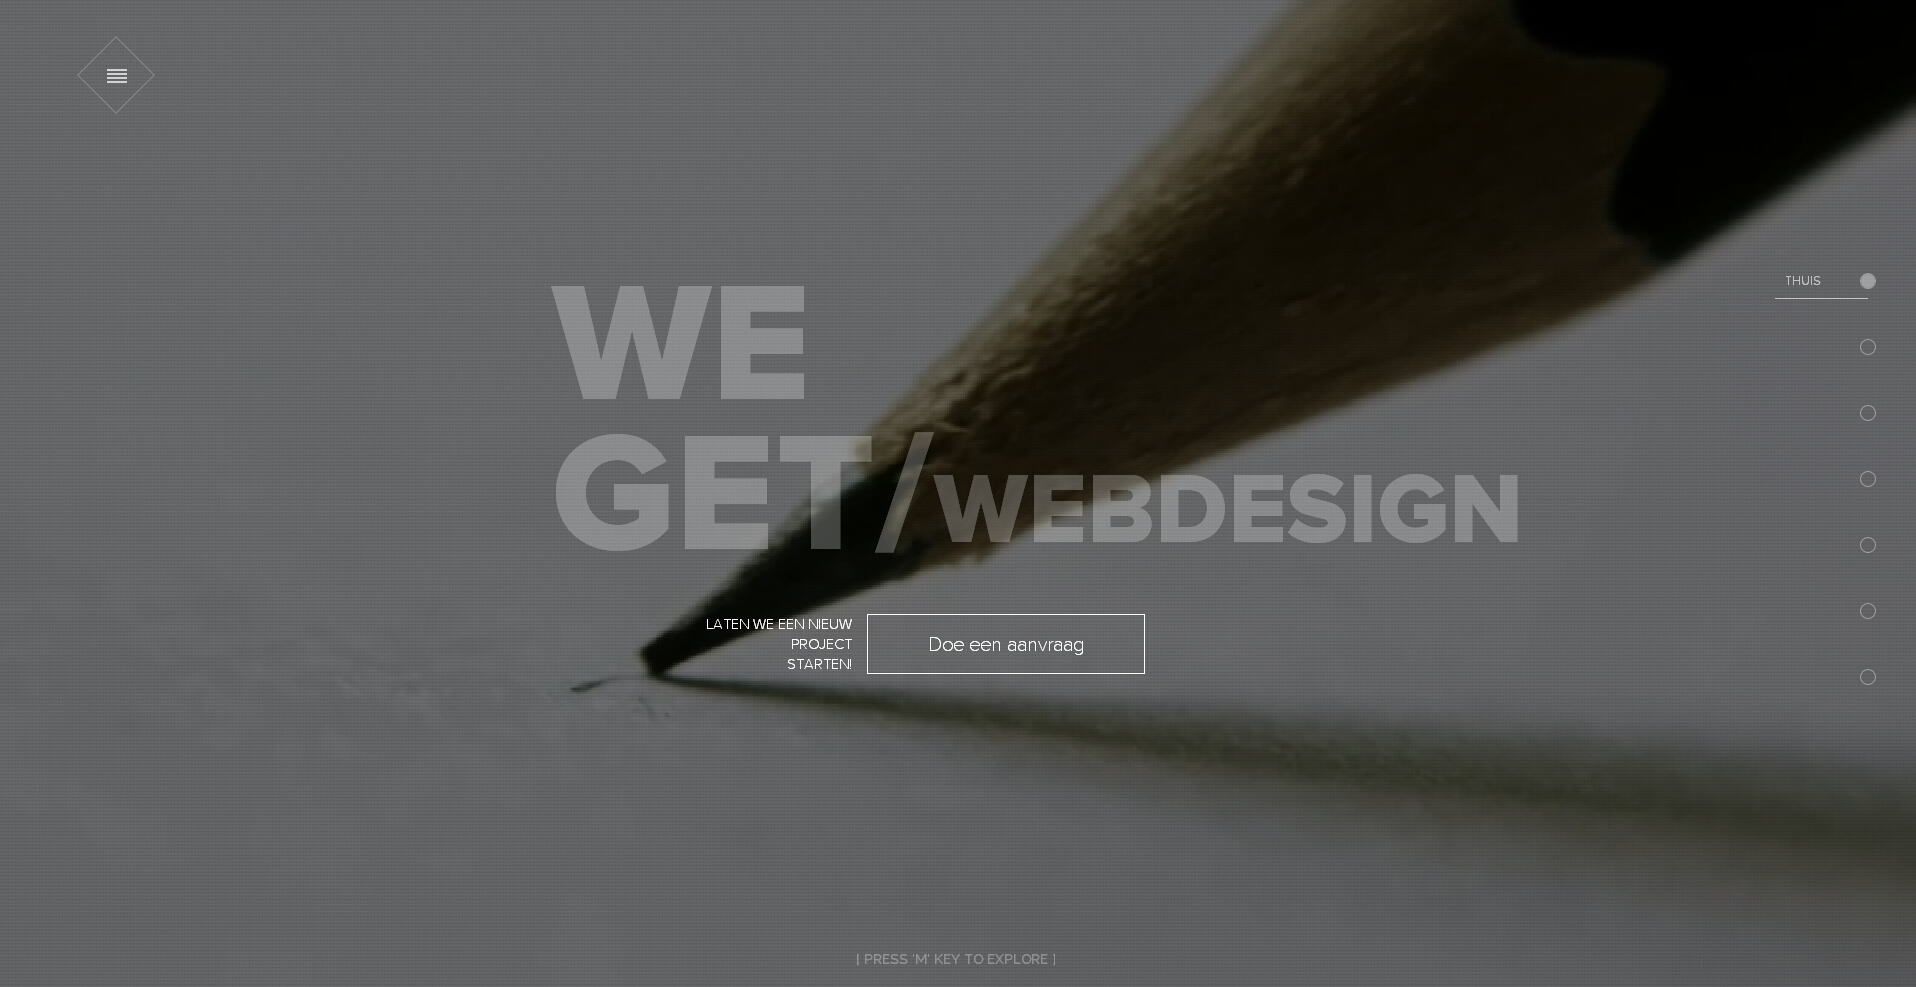 荷兰THUIS-WEGET网页设计师程序员个人酷站